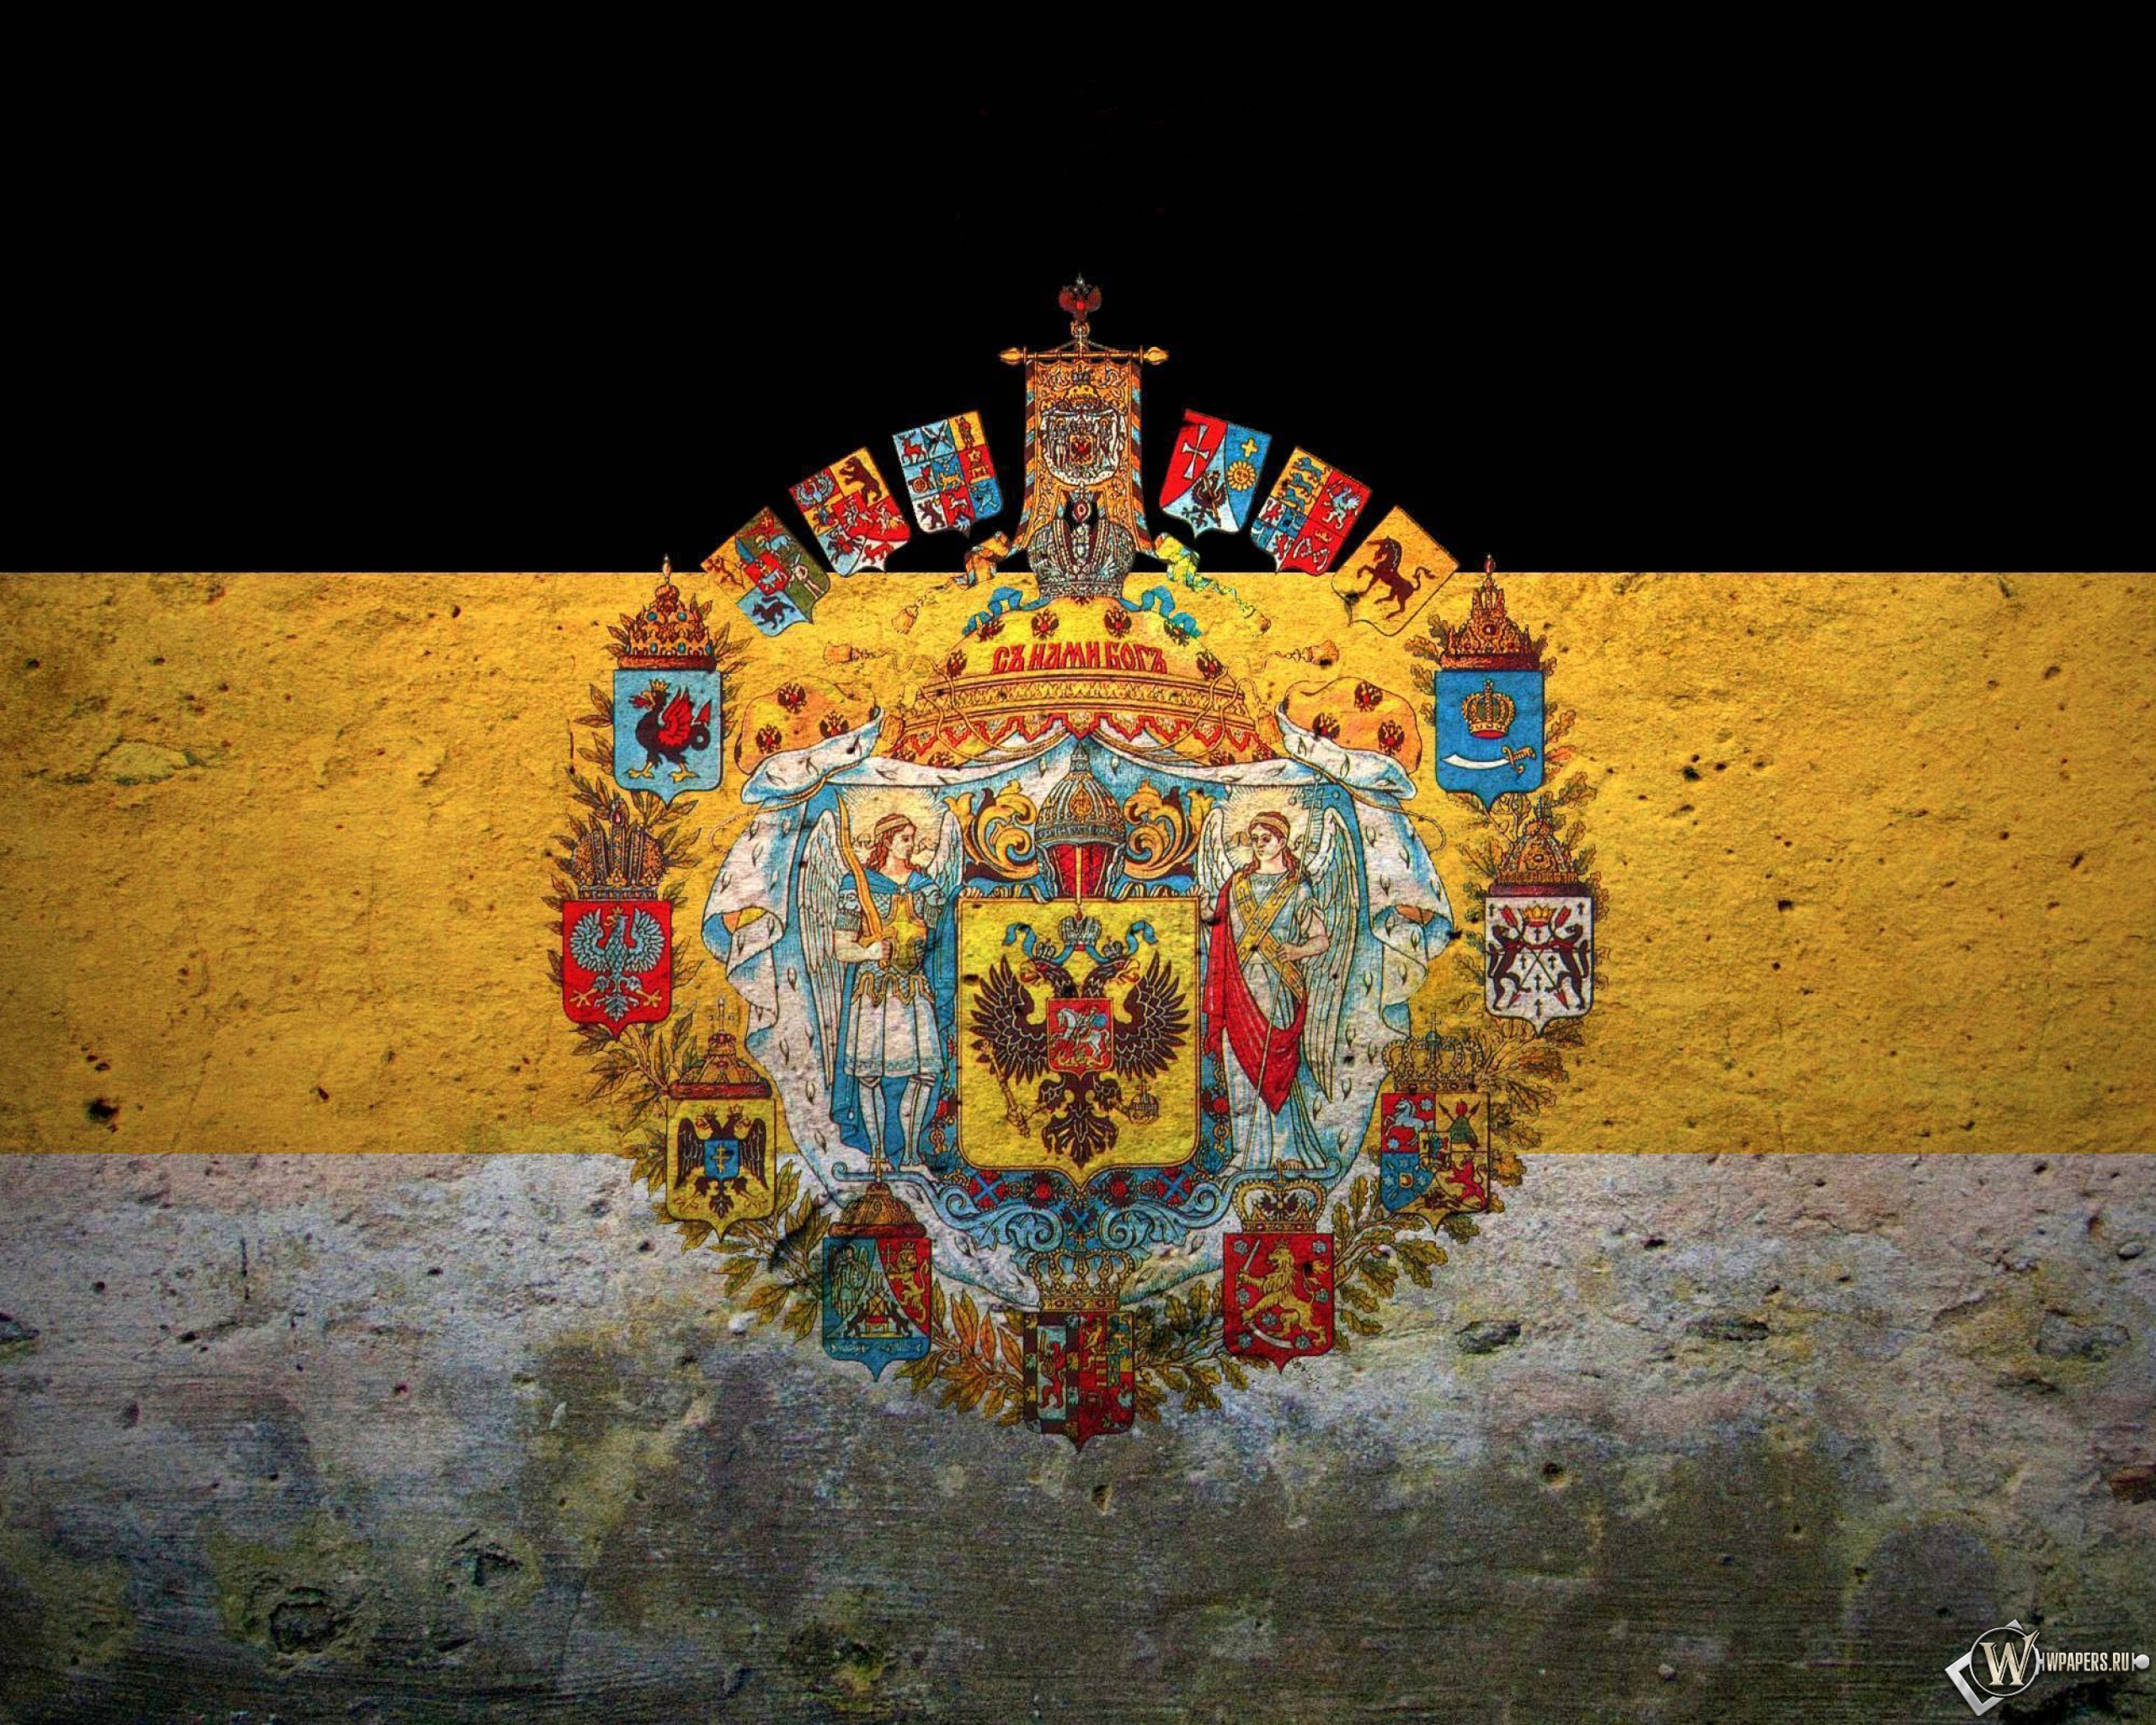 Как выглядит флаг российской империи фото